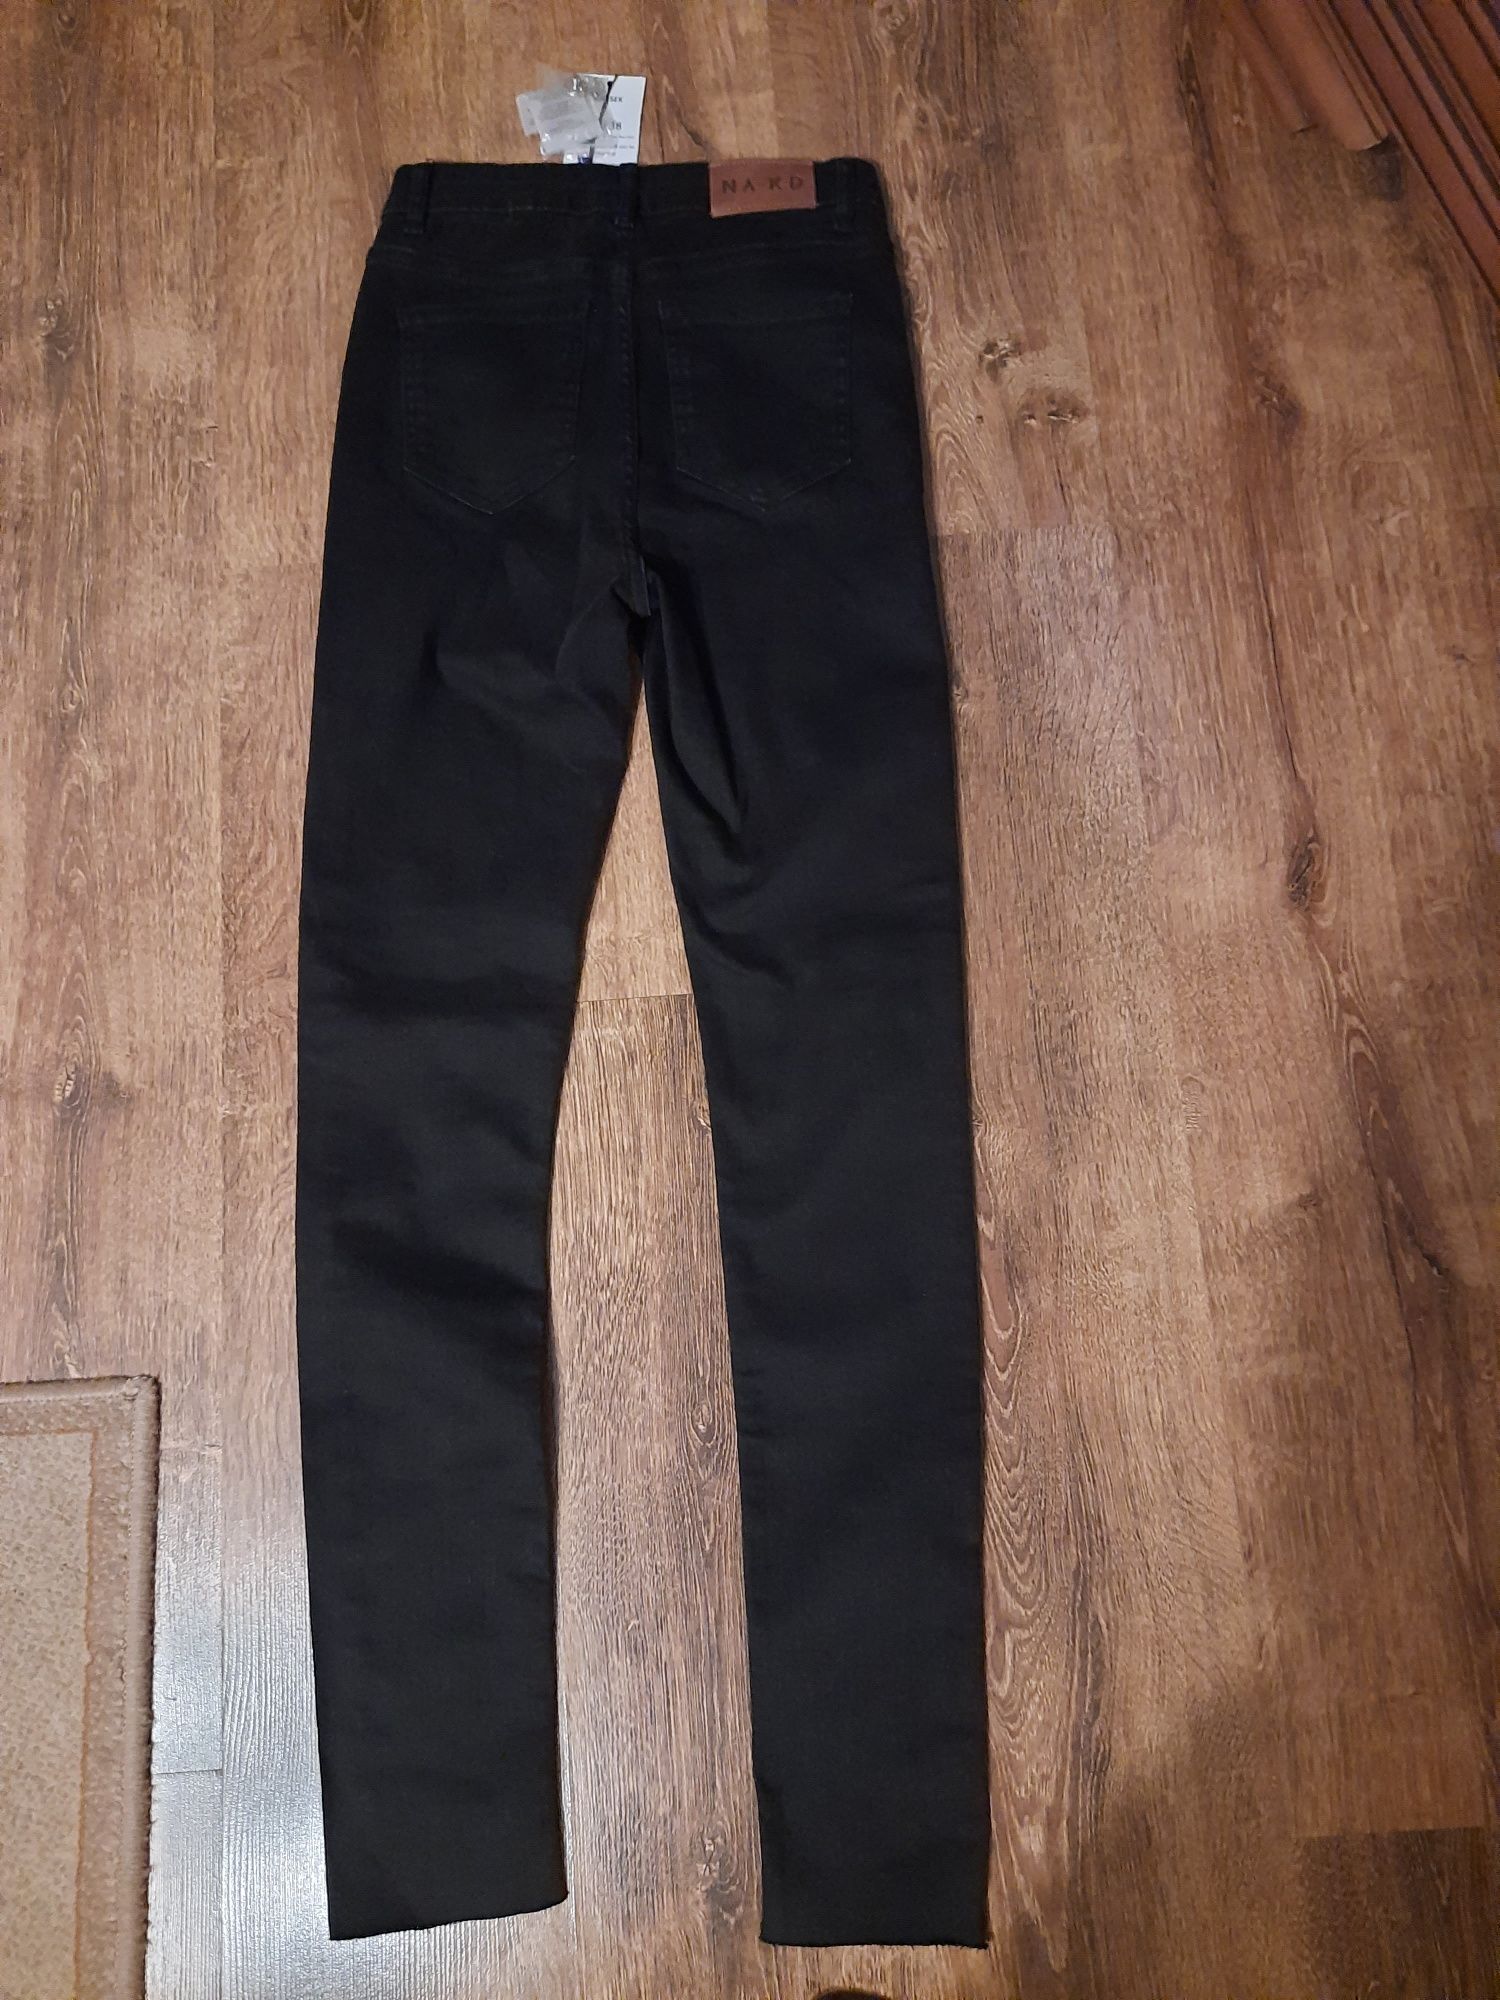 Spodnie czarne jeans NA-KD rozm. 38 nowe